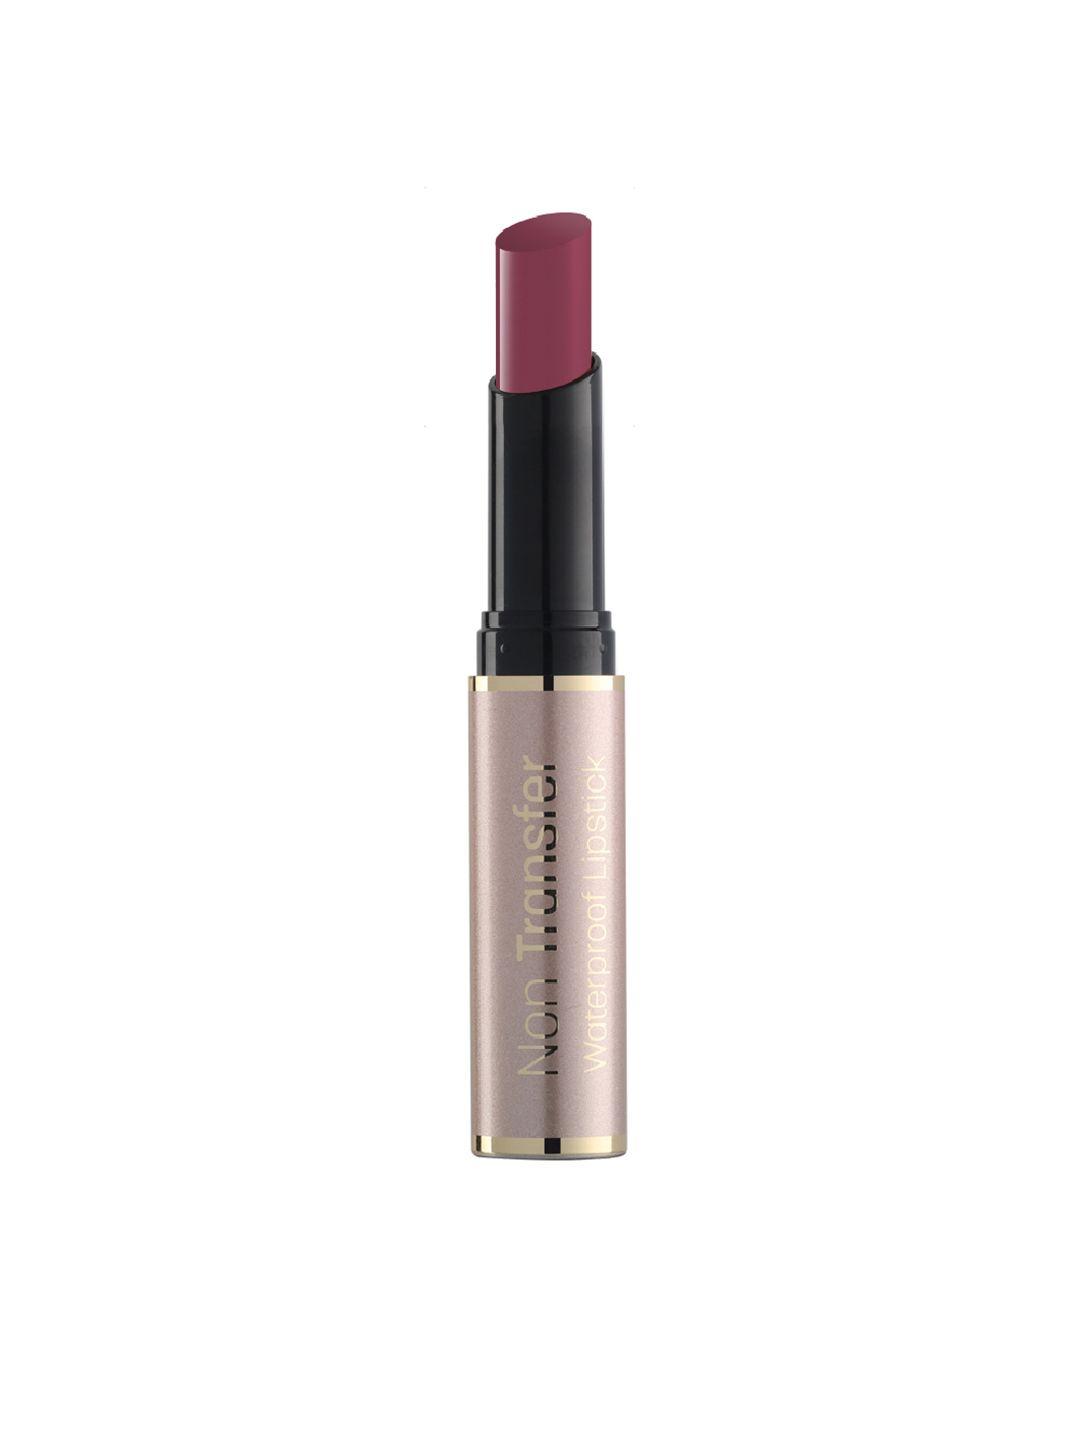 swiss beauty non transfer waterproof matte lipstick - lust on 421